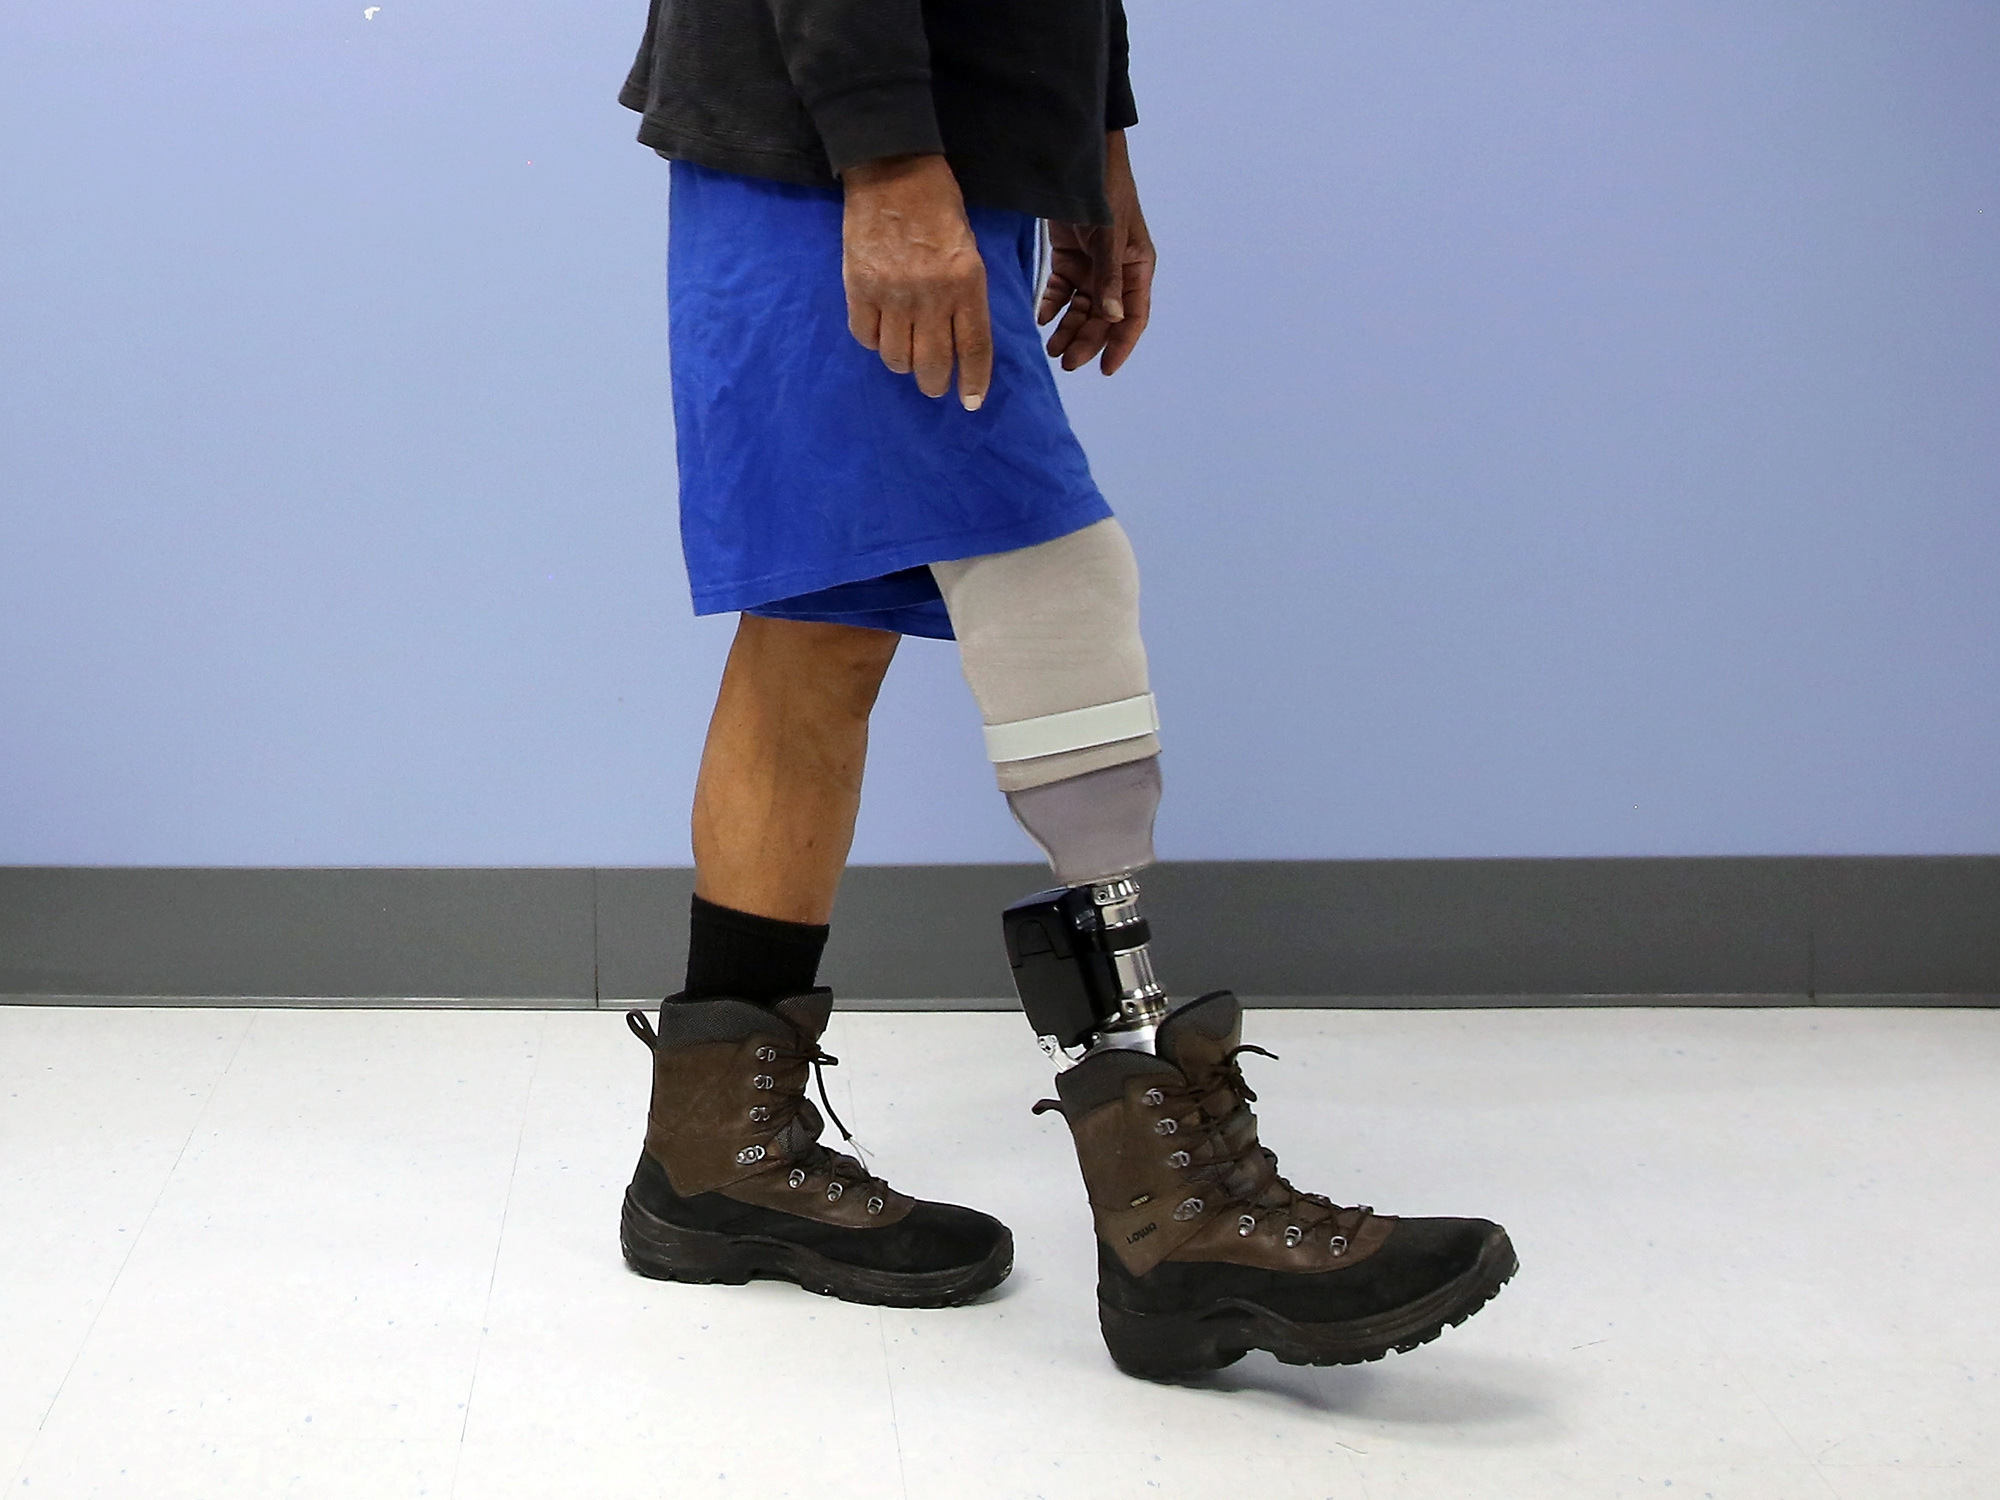 VA Hospital Provides Amputees With Prosthetics And Adaptive Sports